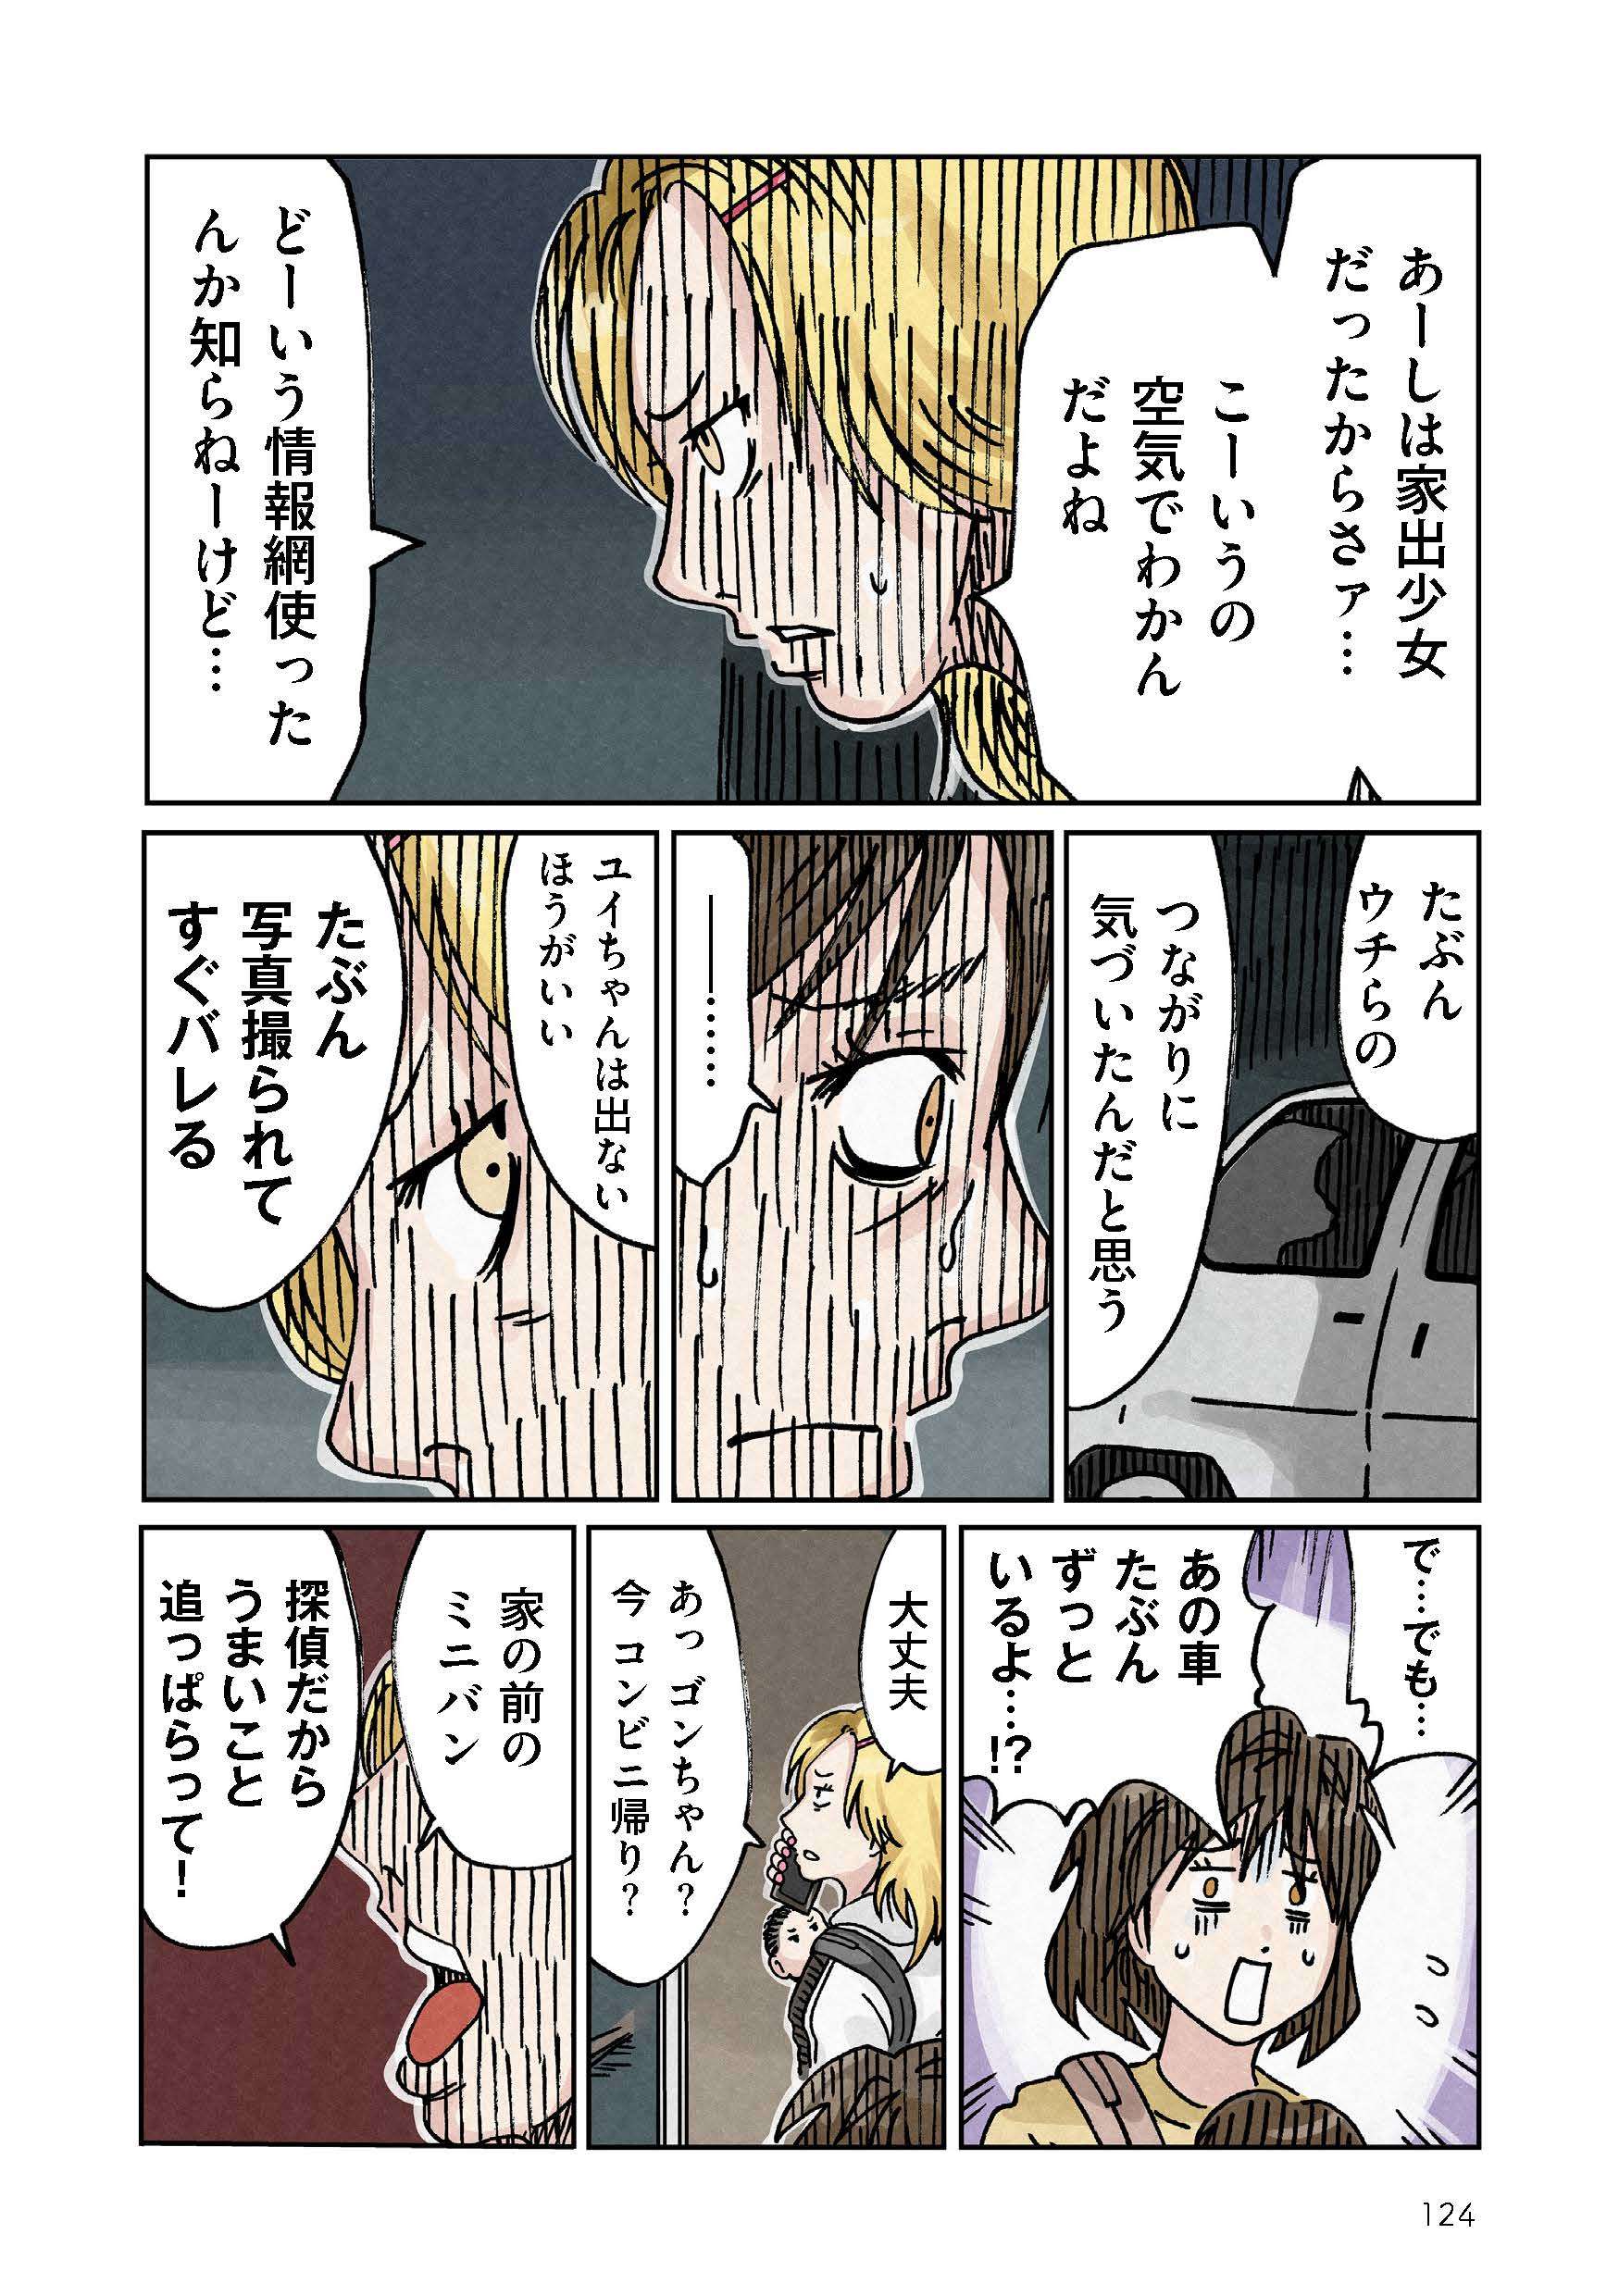 どちらかの家庭が崩壊する漫画_rgb_単ページ_ページ_124.jpg